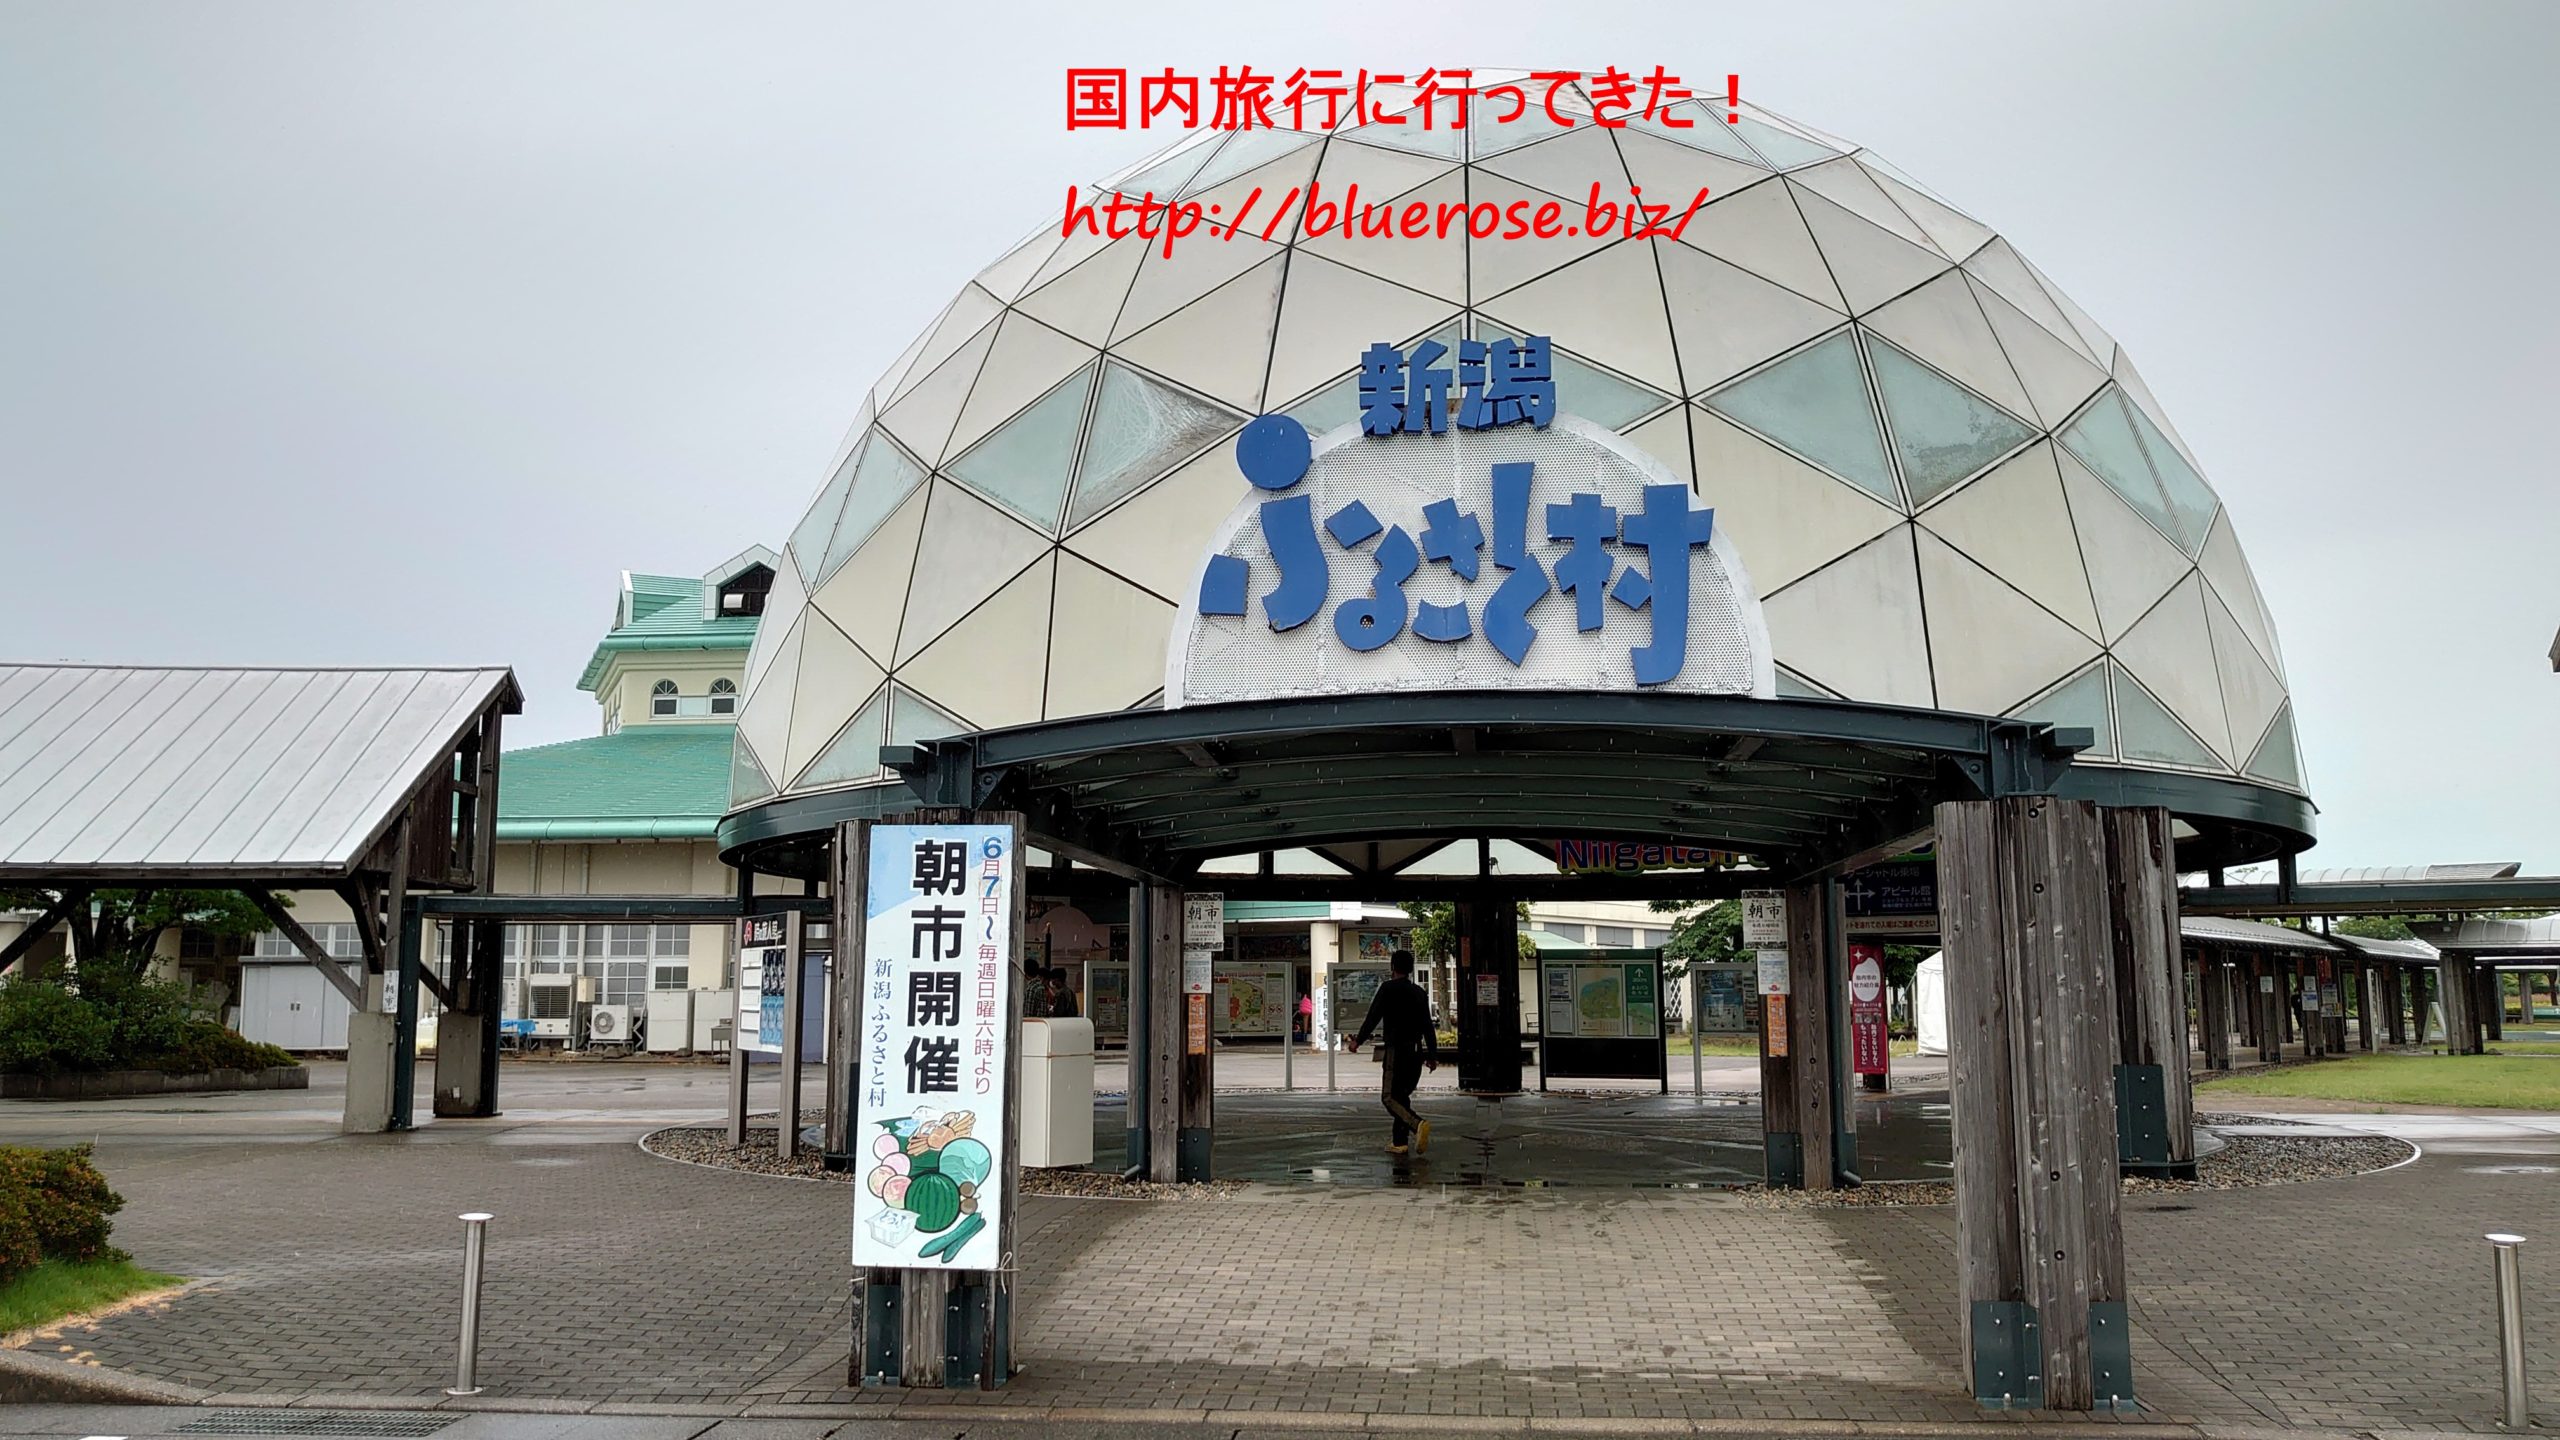 新潟ふるさと村 道の駅でイベントがたくさん 食事も美味しい 情報発信ブログサイト Blue Rose